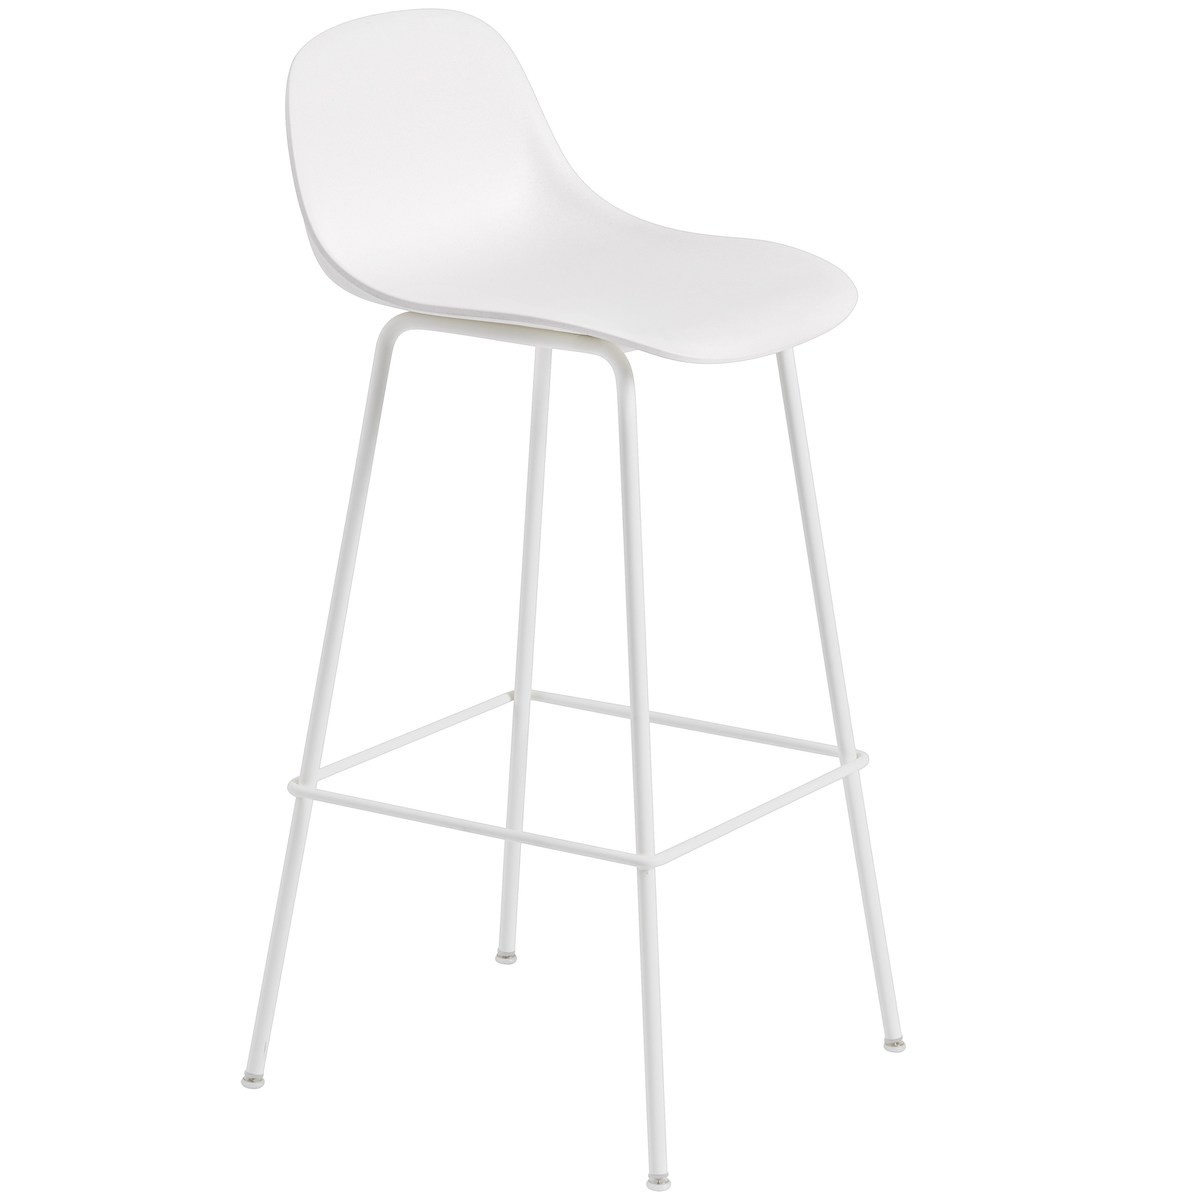 natural white / white - Fiber bar stool - tube base with backrest